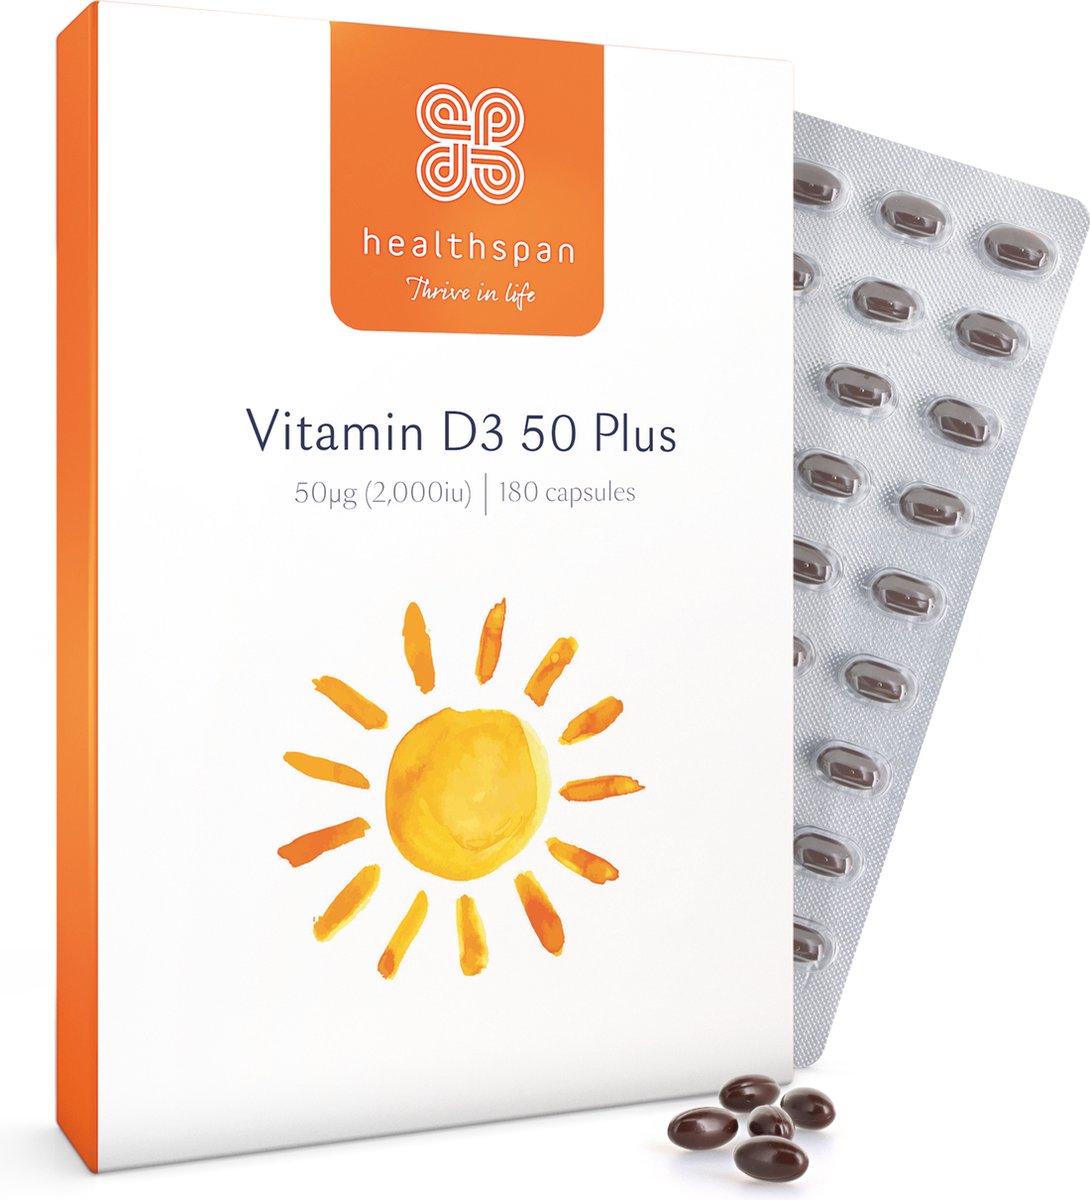 Healthspan Vitamine D3 50 Plus | 180 capsules | 50ug (2.000iu) vitamine D3 | Zeer opneembaar | Ondersteunt de immuungezondheid | Houdt botten, tanden & spieren gezond | Pepermuntsmaak | Vegetarisch